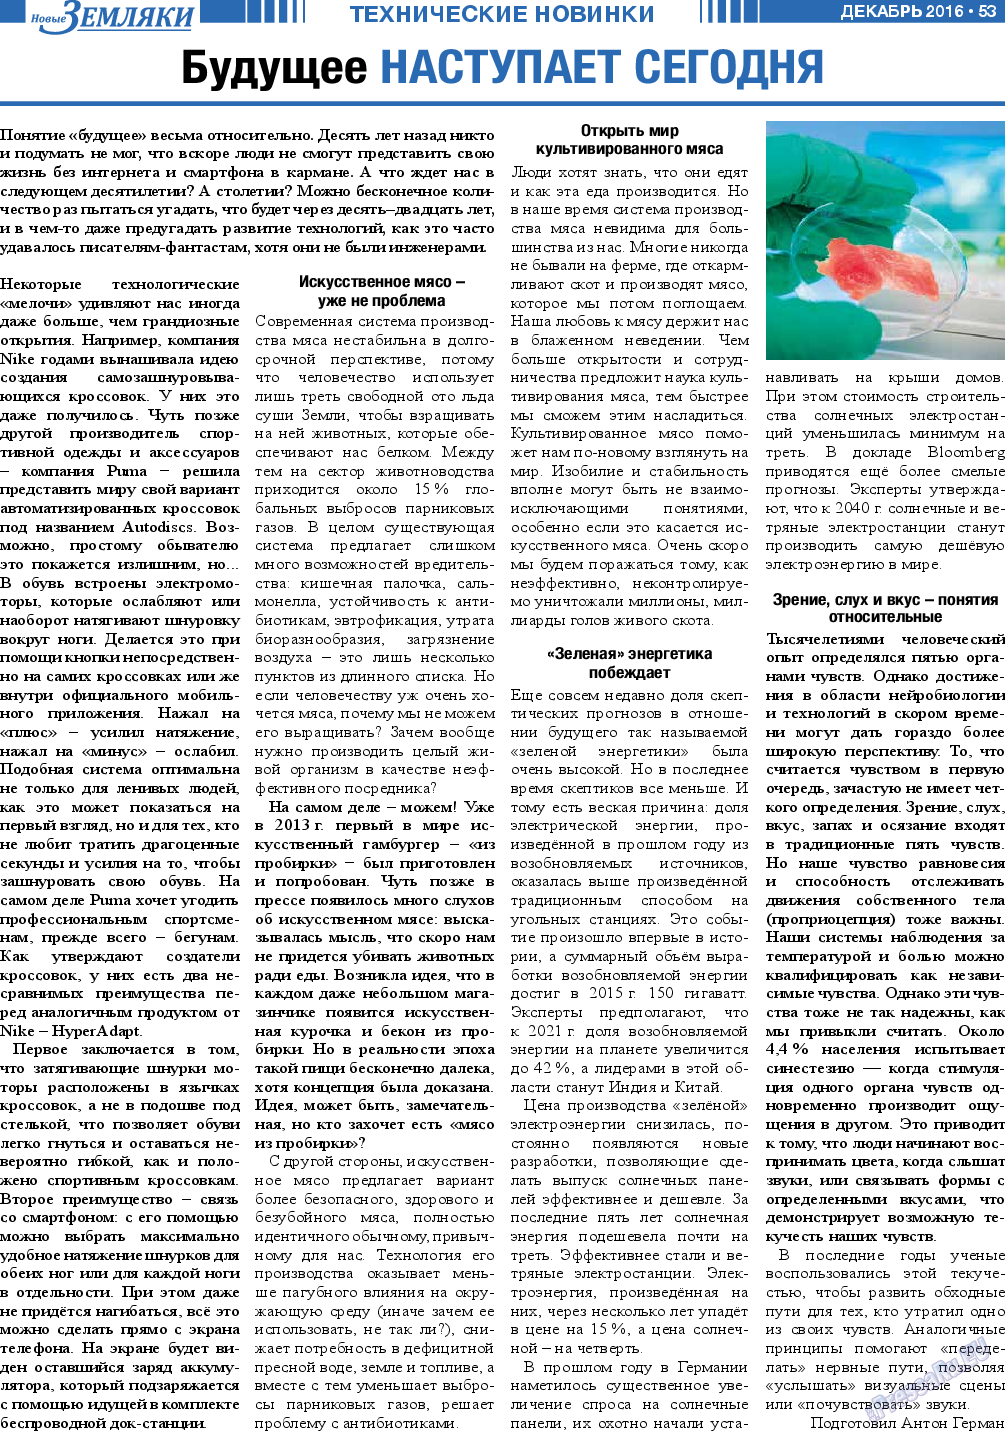 Новые Земляки, газета. 2016 №12 стр.53